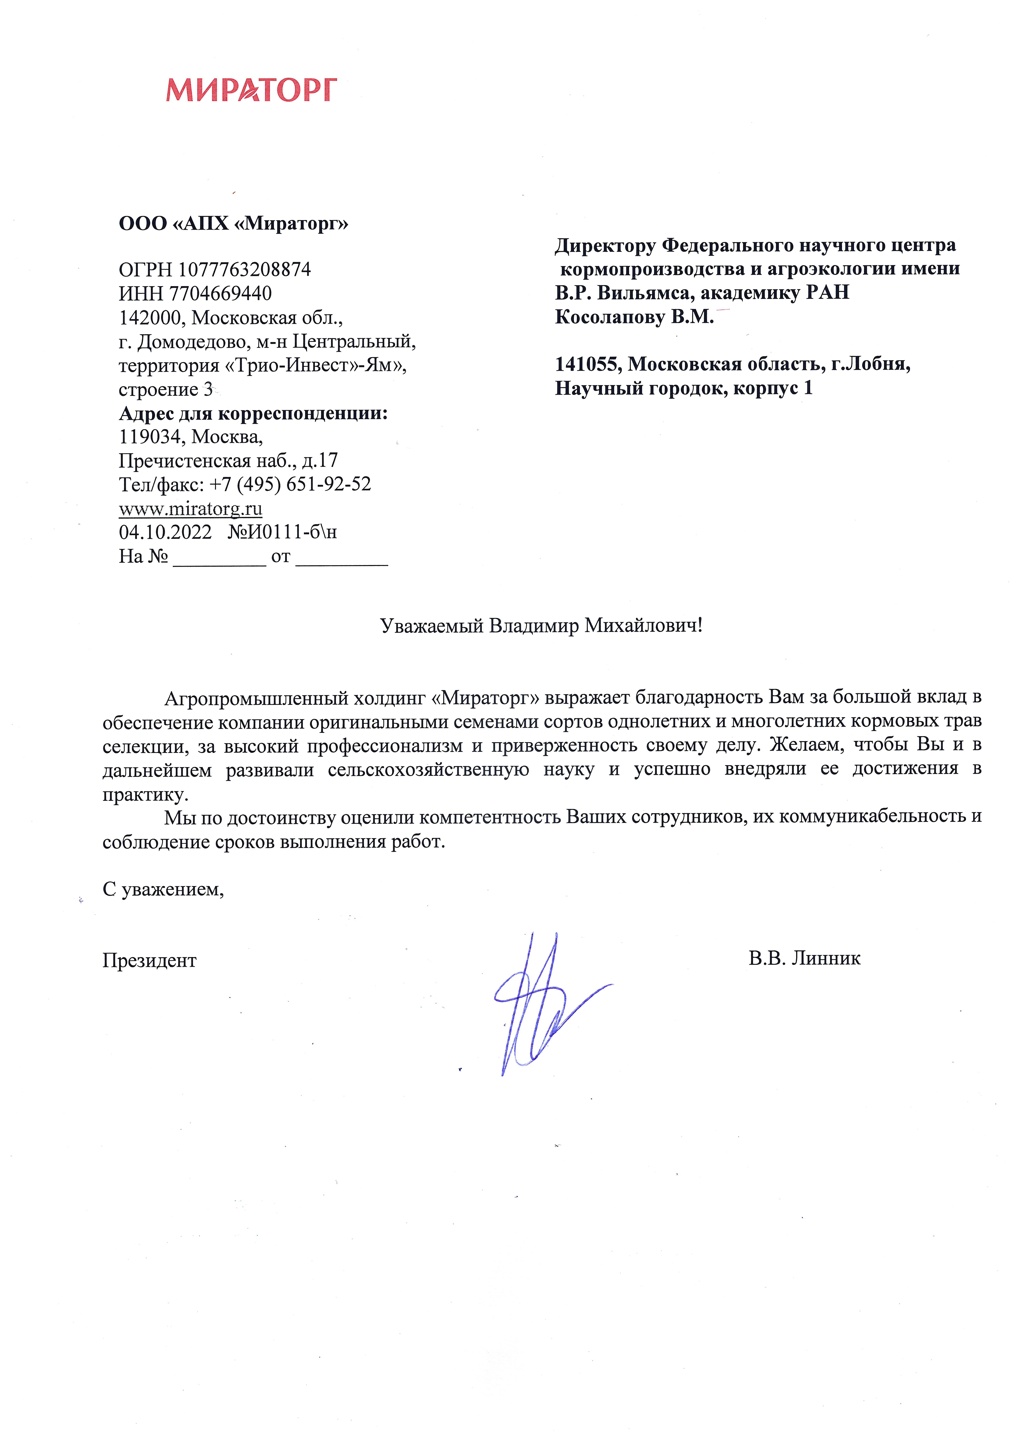 18 октября 2022 г. получено благадарственное письмо Президента ООО «АПХ «Мираторг» В.В. Линника.